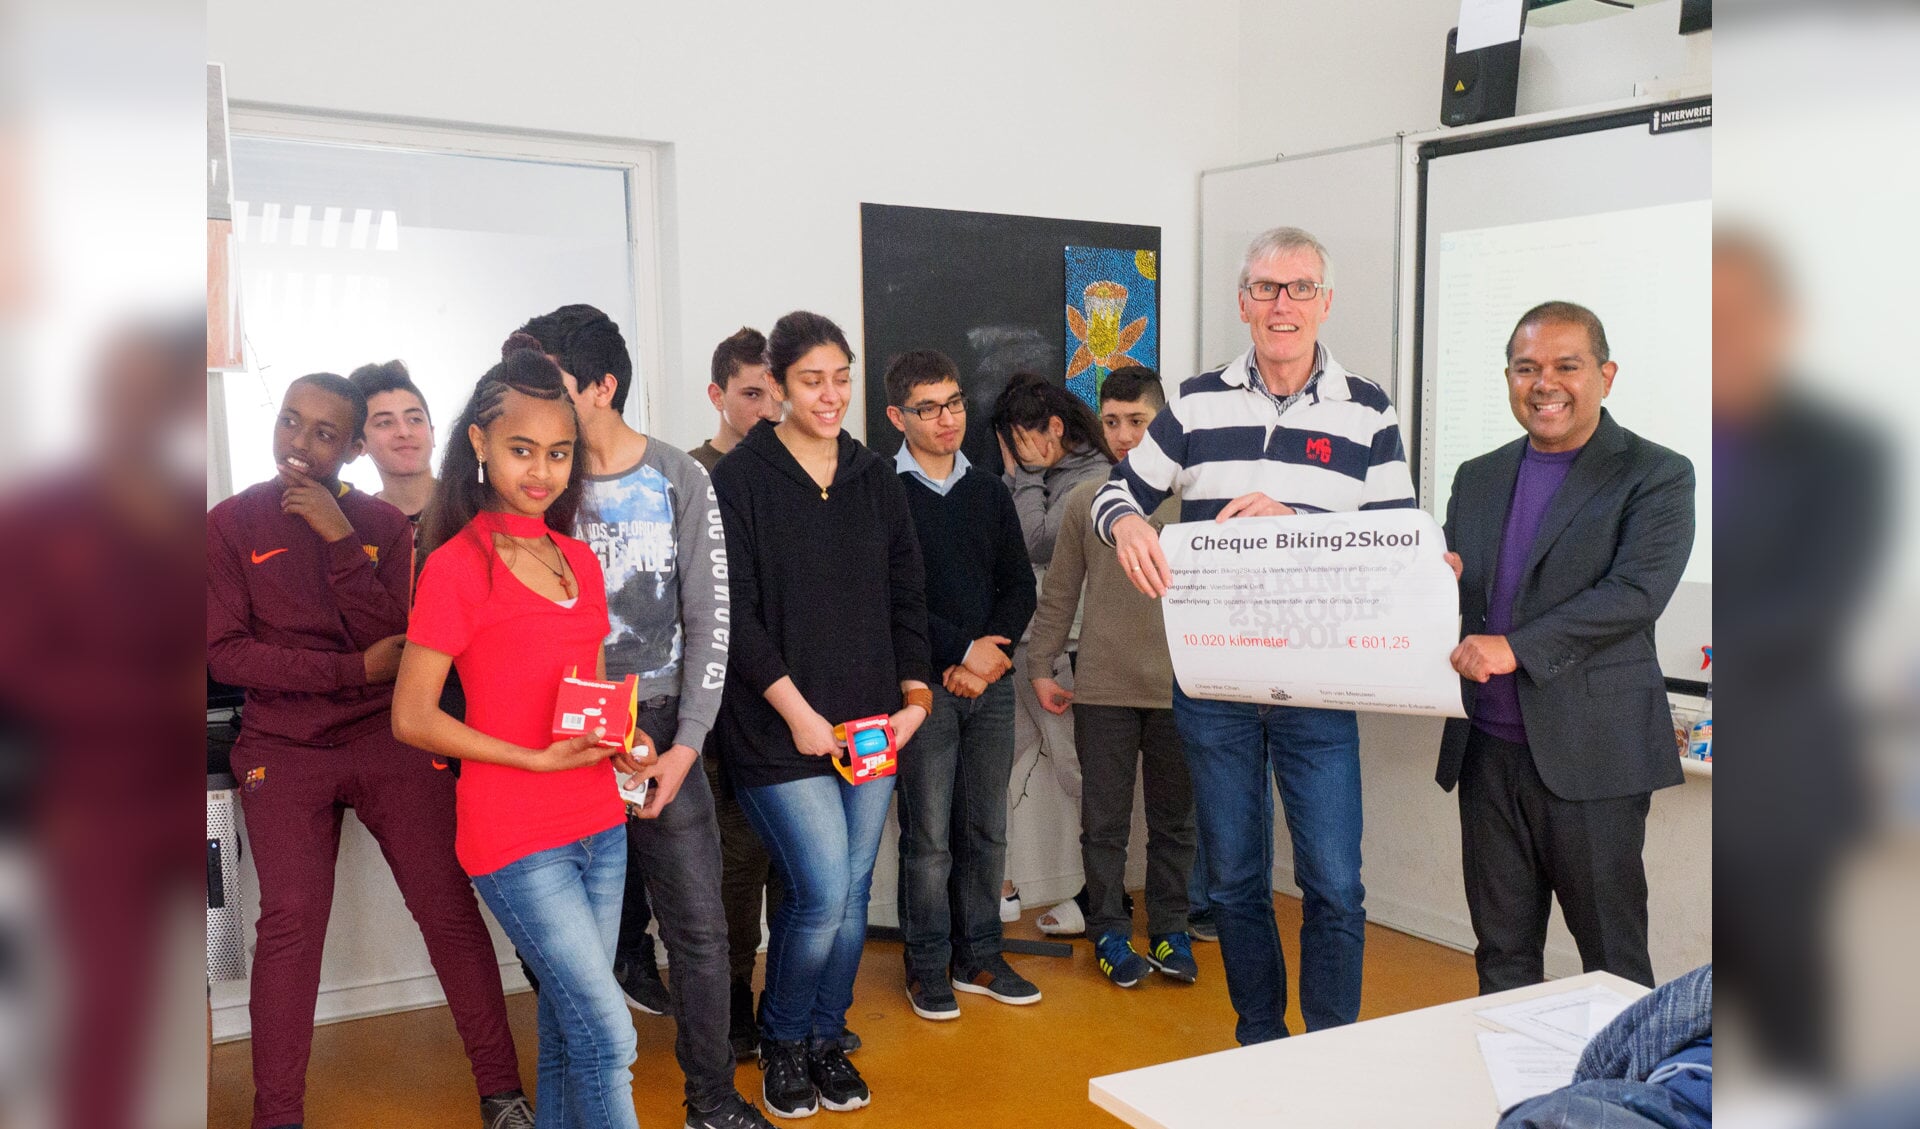 De leerlingen overhandigden de cheque aan de vrijwilligers van Voedselbank Delft. (Foto en tekst: Martin Groen)